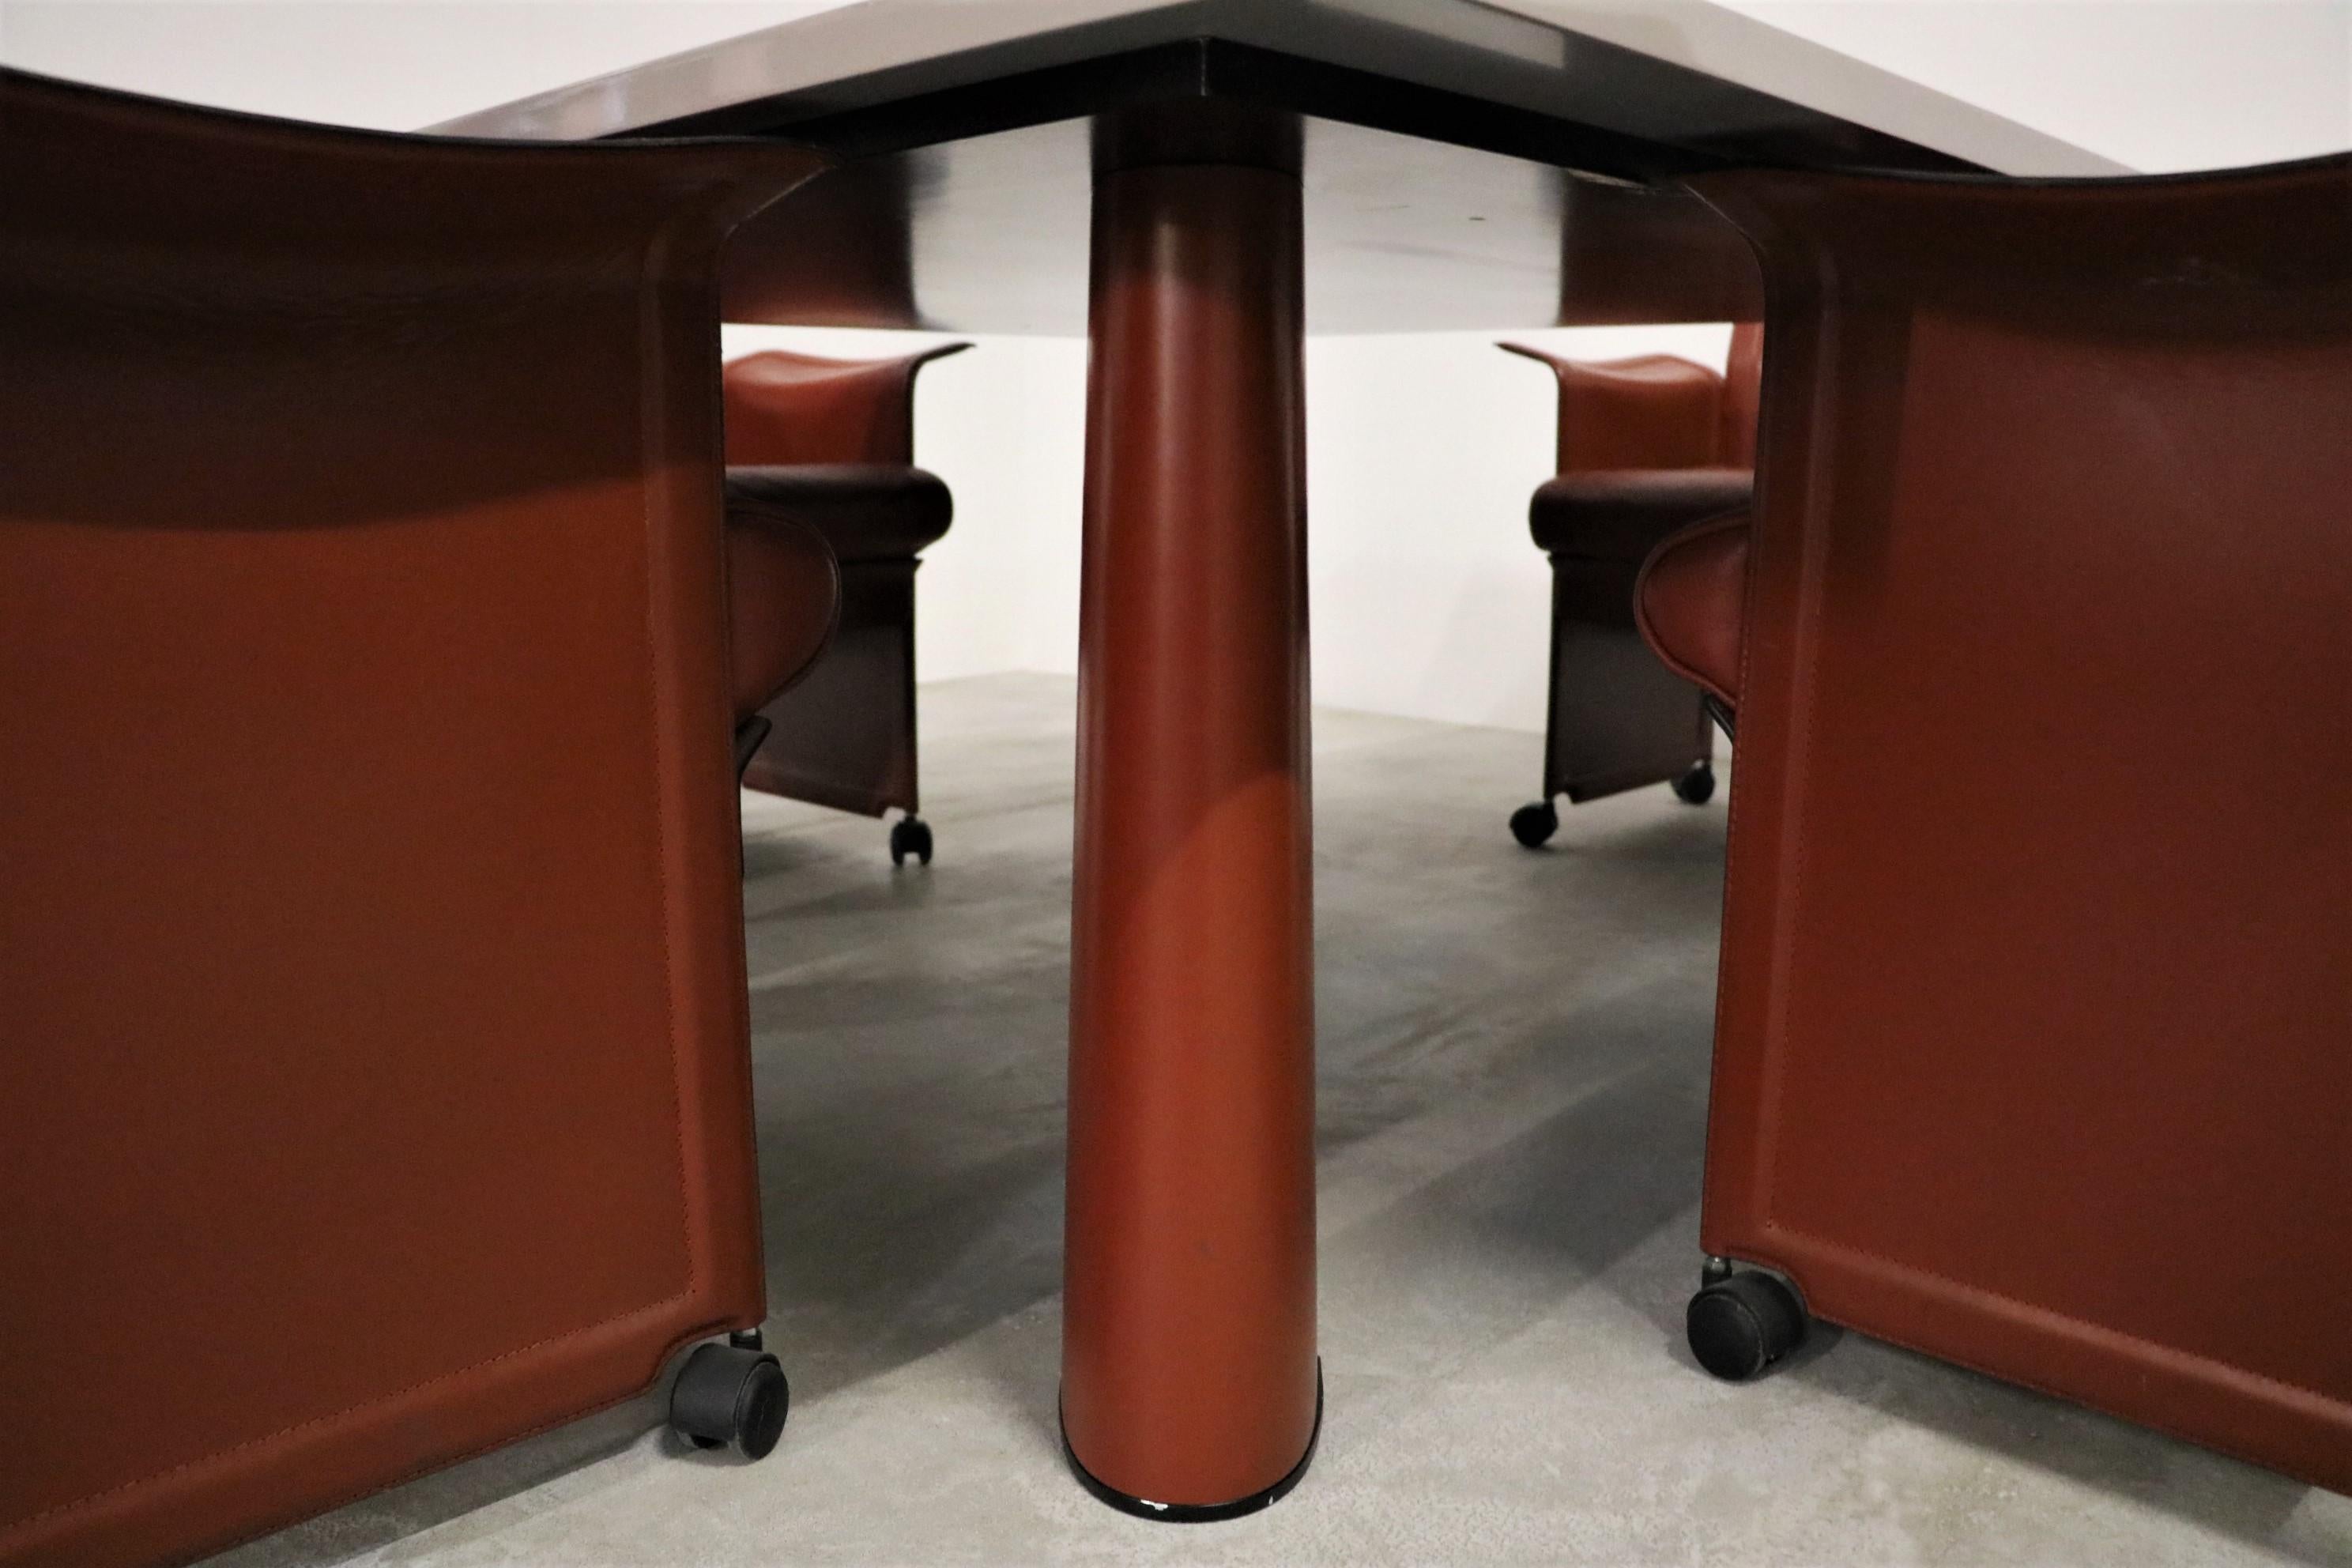 Außergewöhnliches Set bestehend aus vier Sesseln Modell 'Korium' mit passendem Tisch des italienischen Designers Tito Agnoli, hergestellt von Matteo Grassi.

Tisch B 150 cm H 73 cm T 150 cm/ Tischplattenstärke 4,8 cm.
Sessel B 78 cm H 87 cm T 60